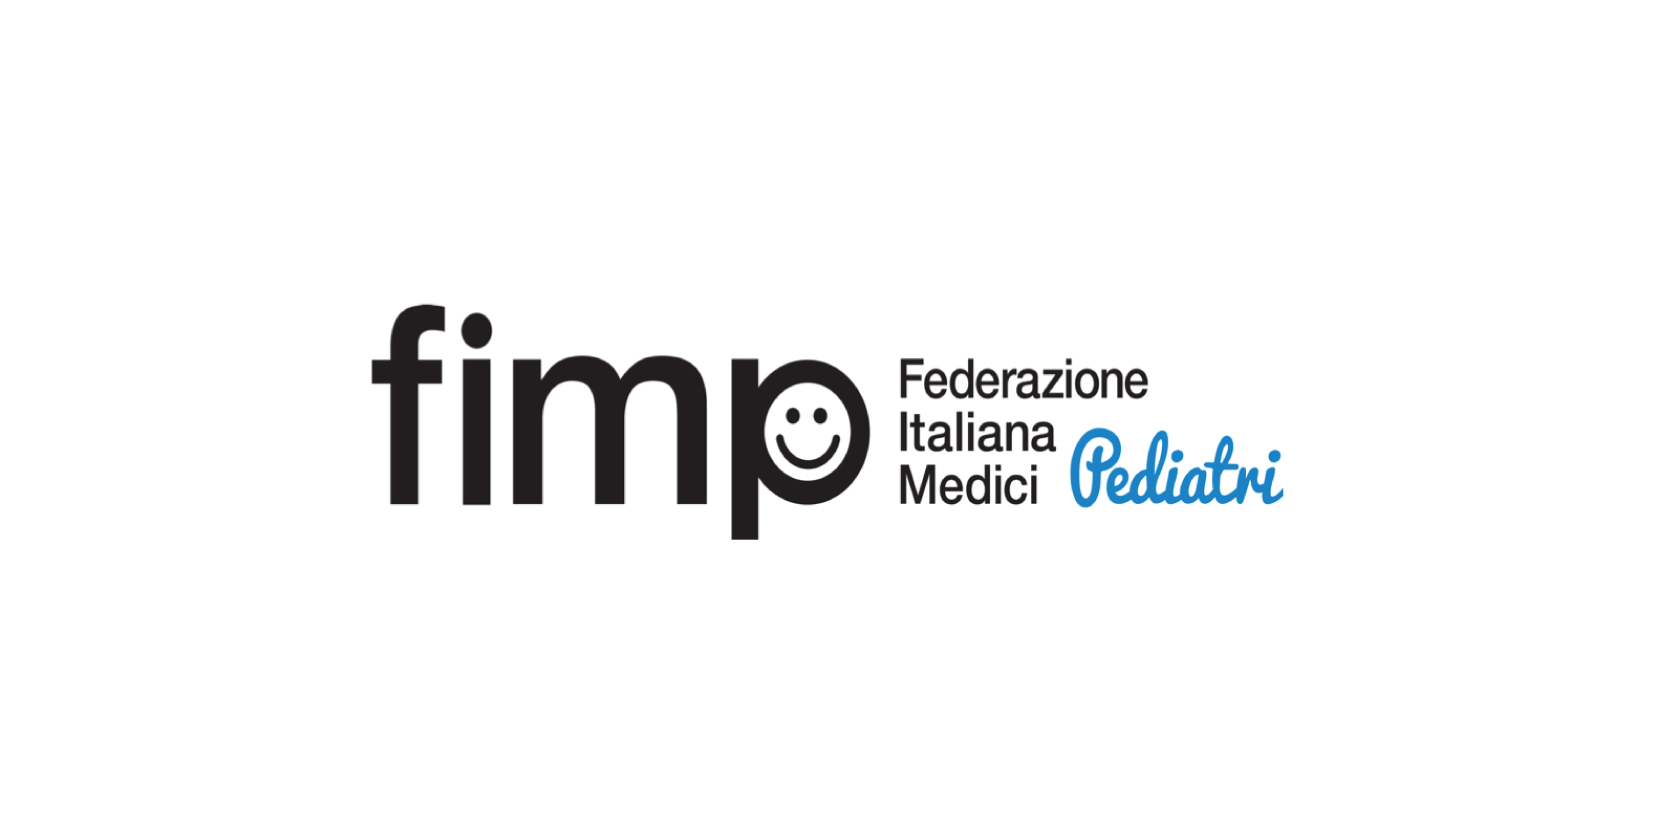 FIMP– Federazione Italiana Medici Pediatri